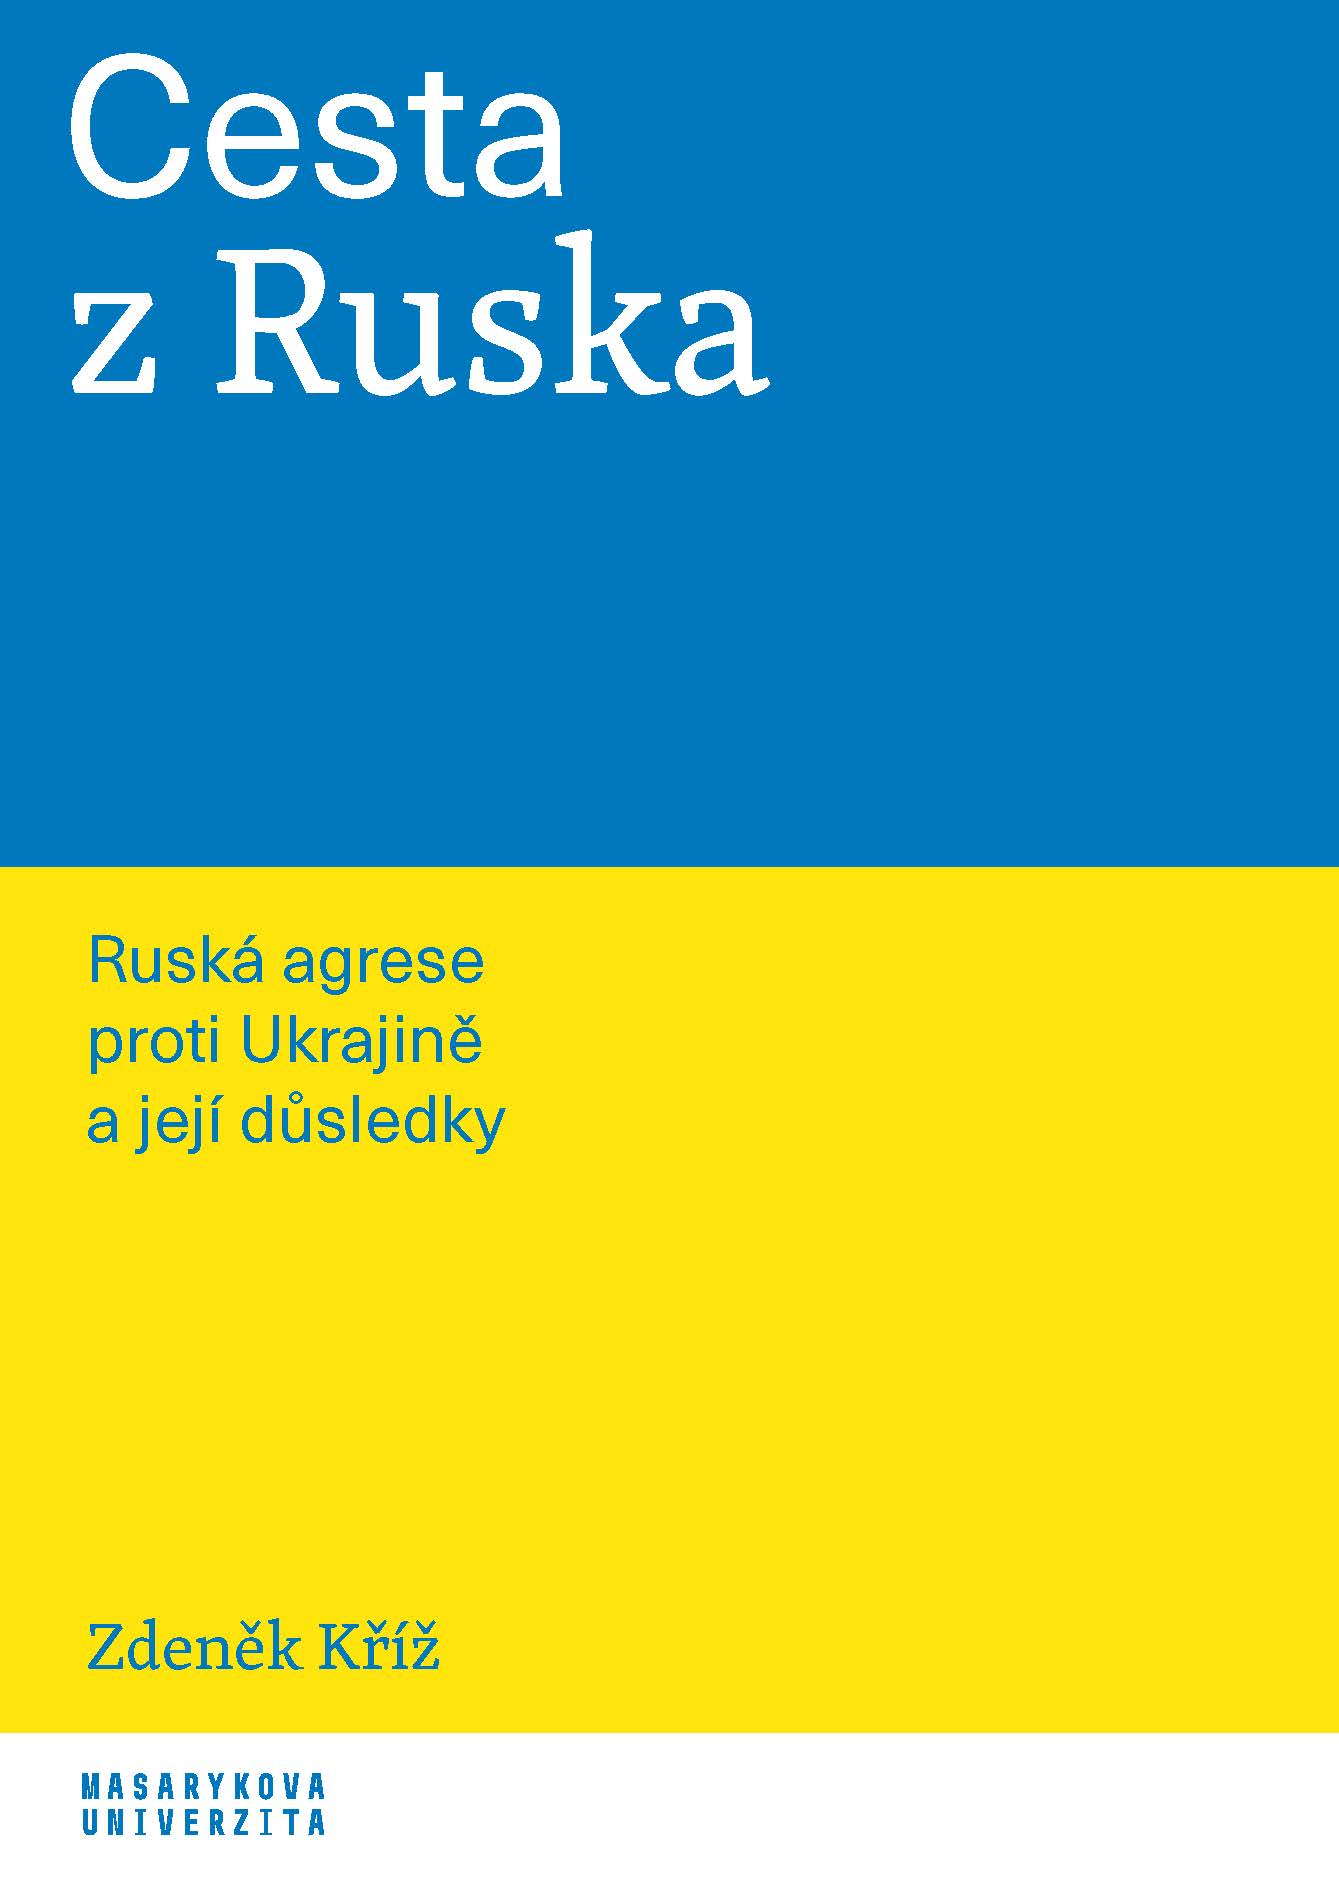 E-kniha Cesta z Ruska - Zdeněk Kříž